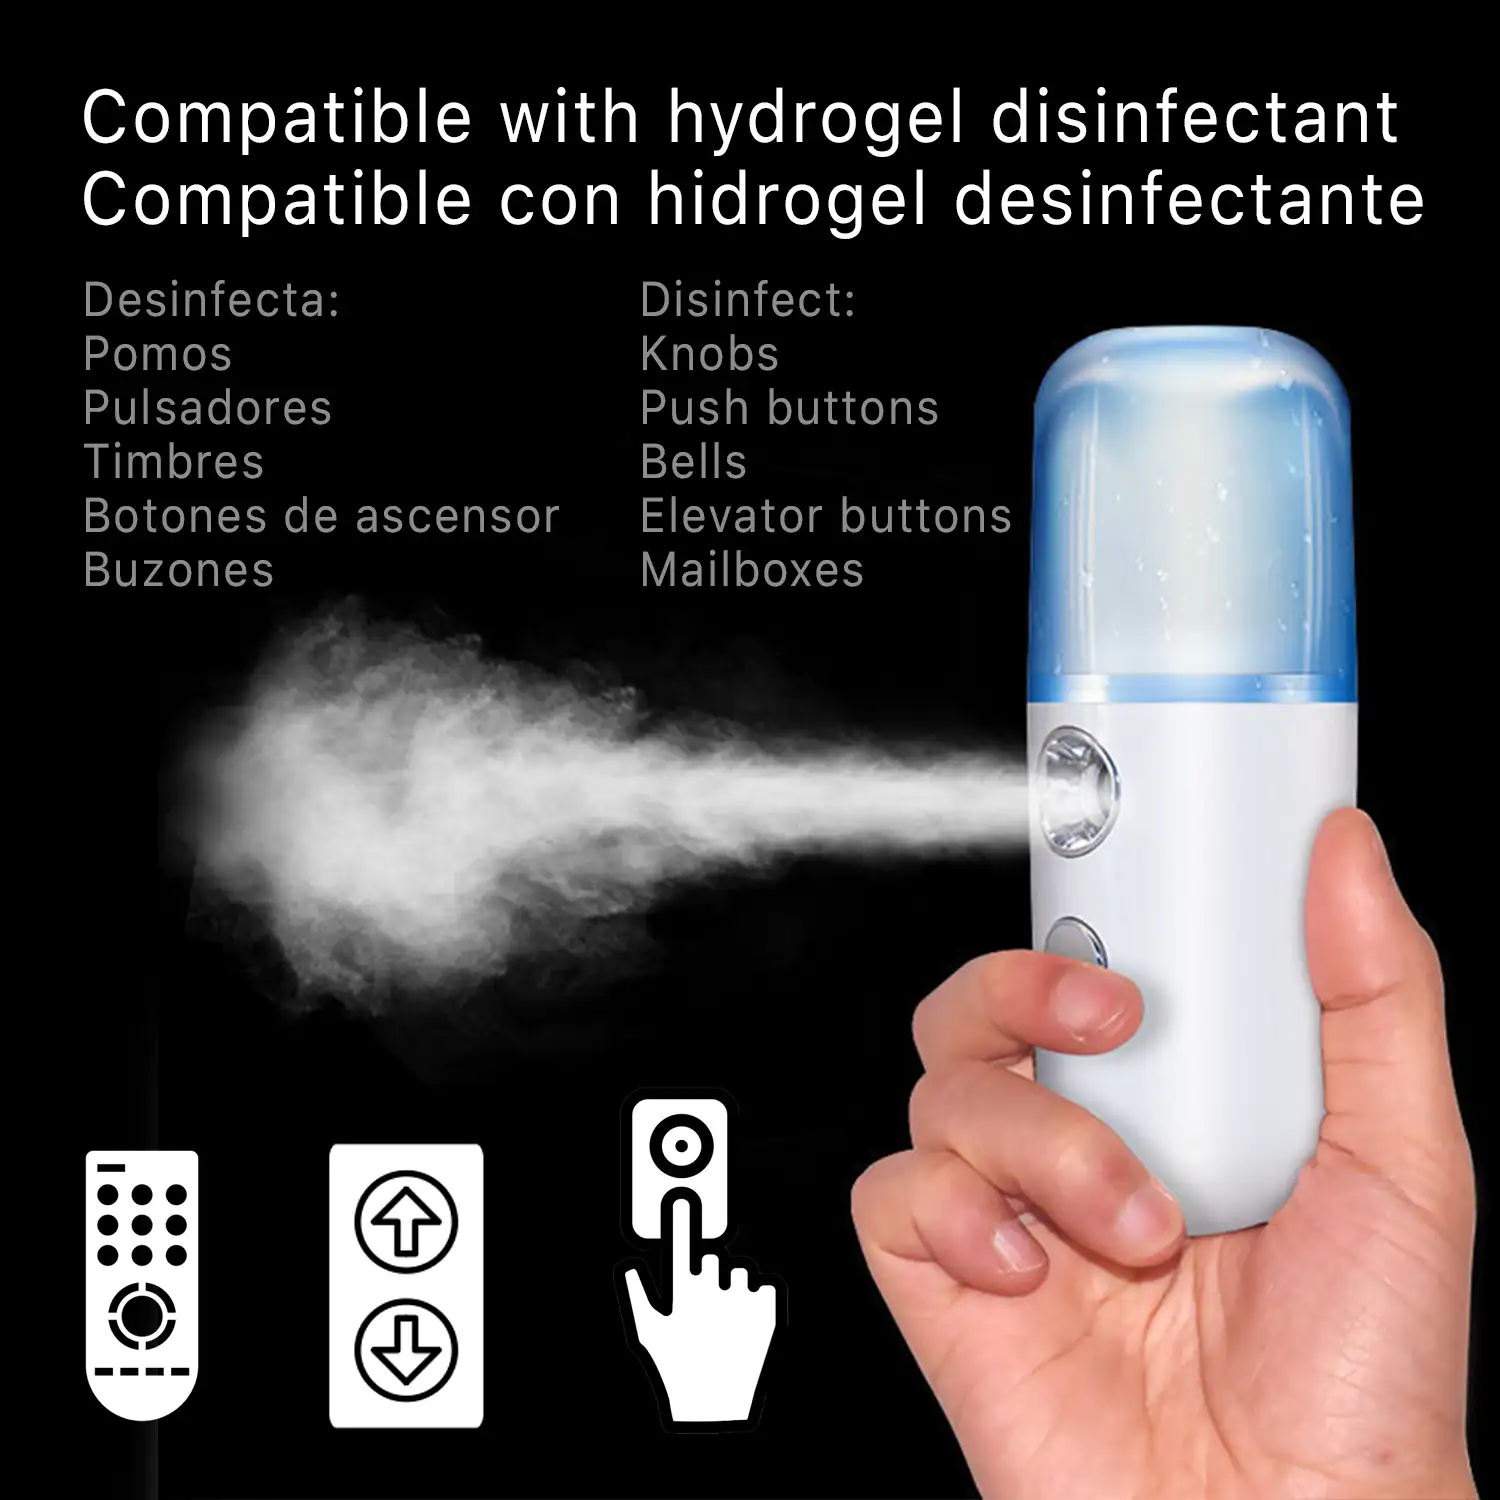  Nebulizador multiusos para desinfección con hidrogel liquido sin tocar objetos.